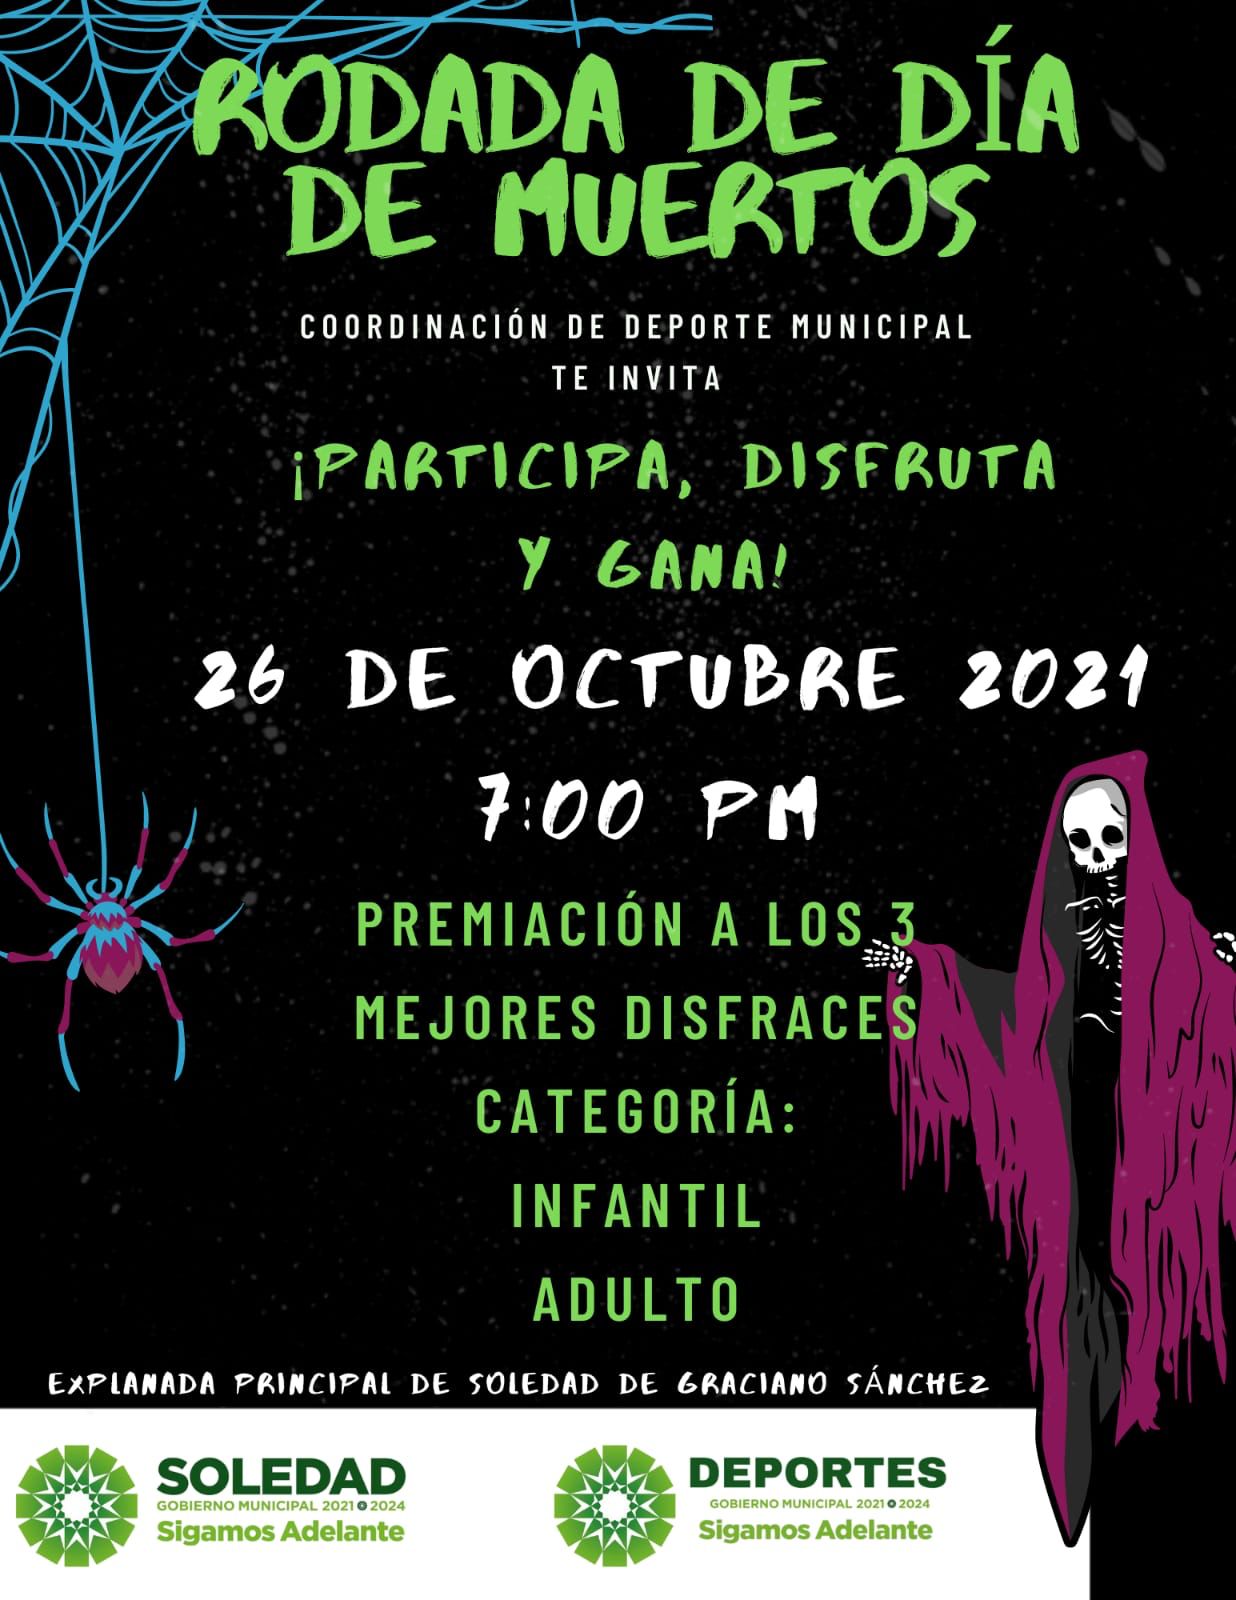 El Ayuntamiento de Soledad, a través de la Coordinación de Deportes invita al público en general a participar en la Rodada Nocturna de Día de Muertos